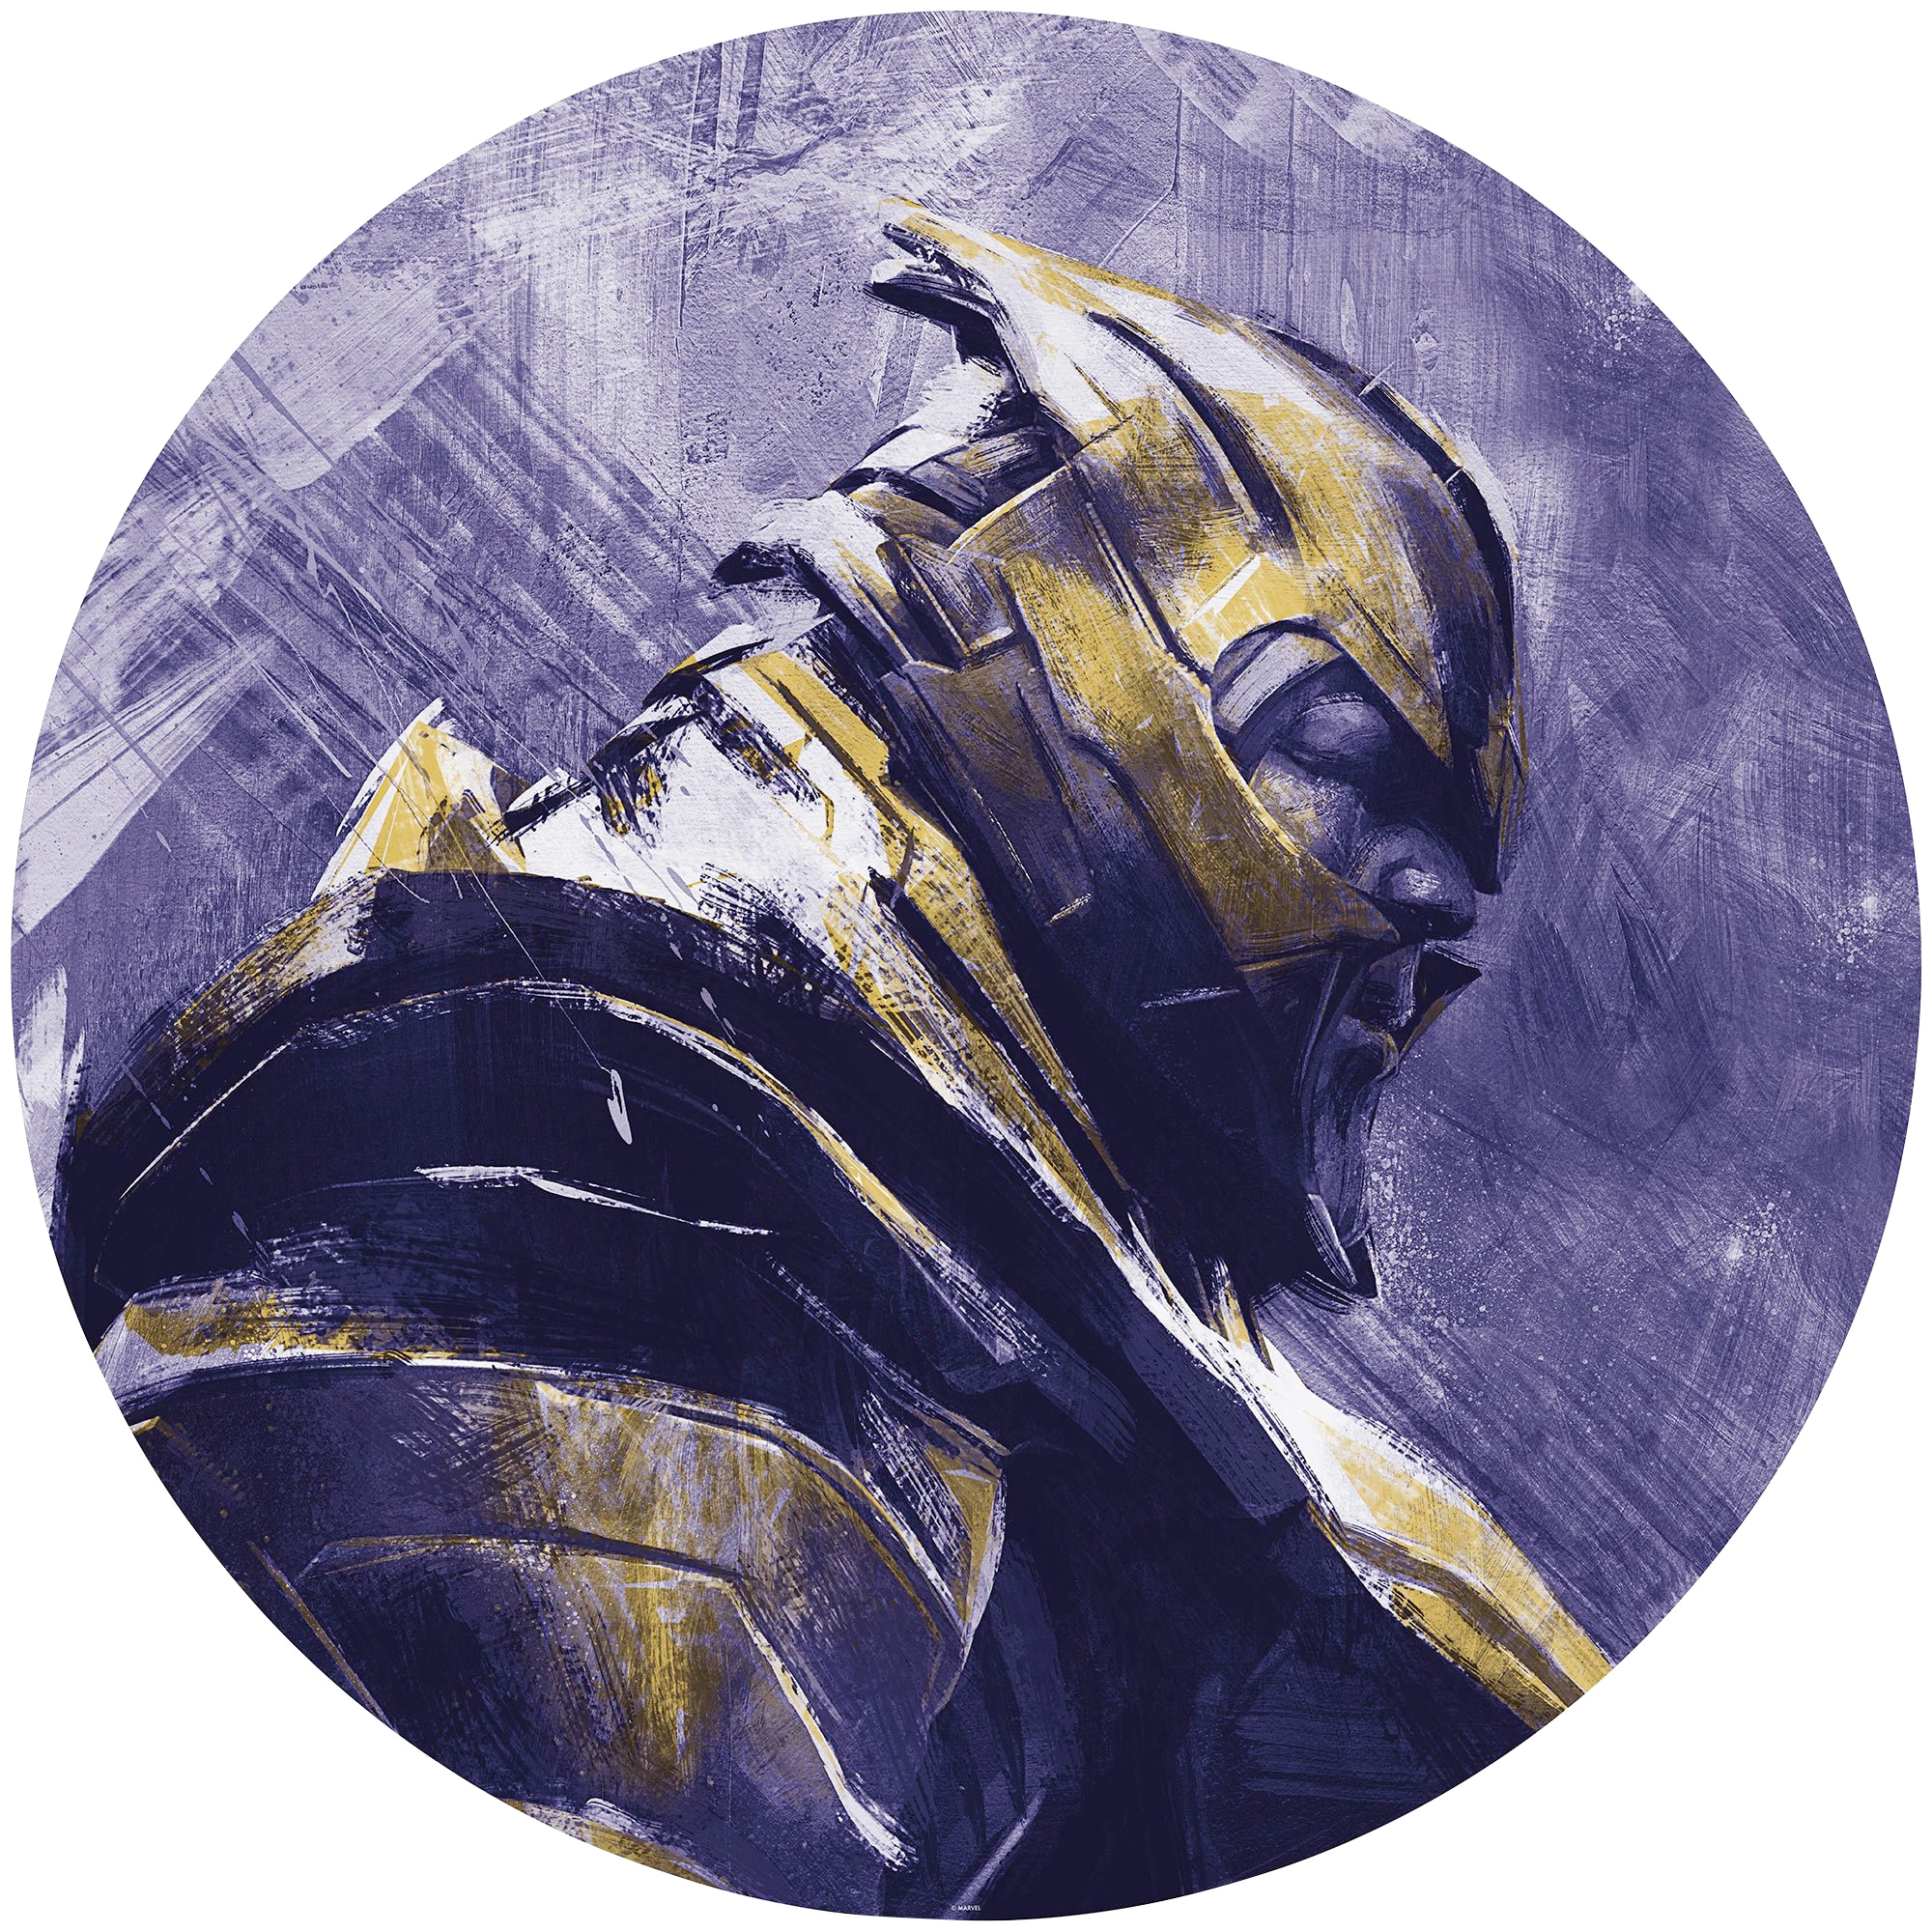 Fototapete »Avengers Painting Thanos«, 125x125 cm (Breite x Höhe), rund und selbstklebend